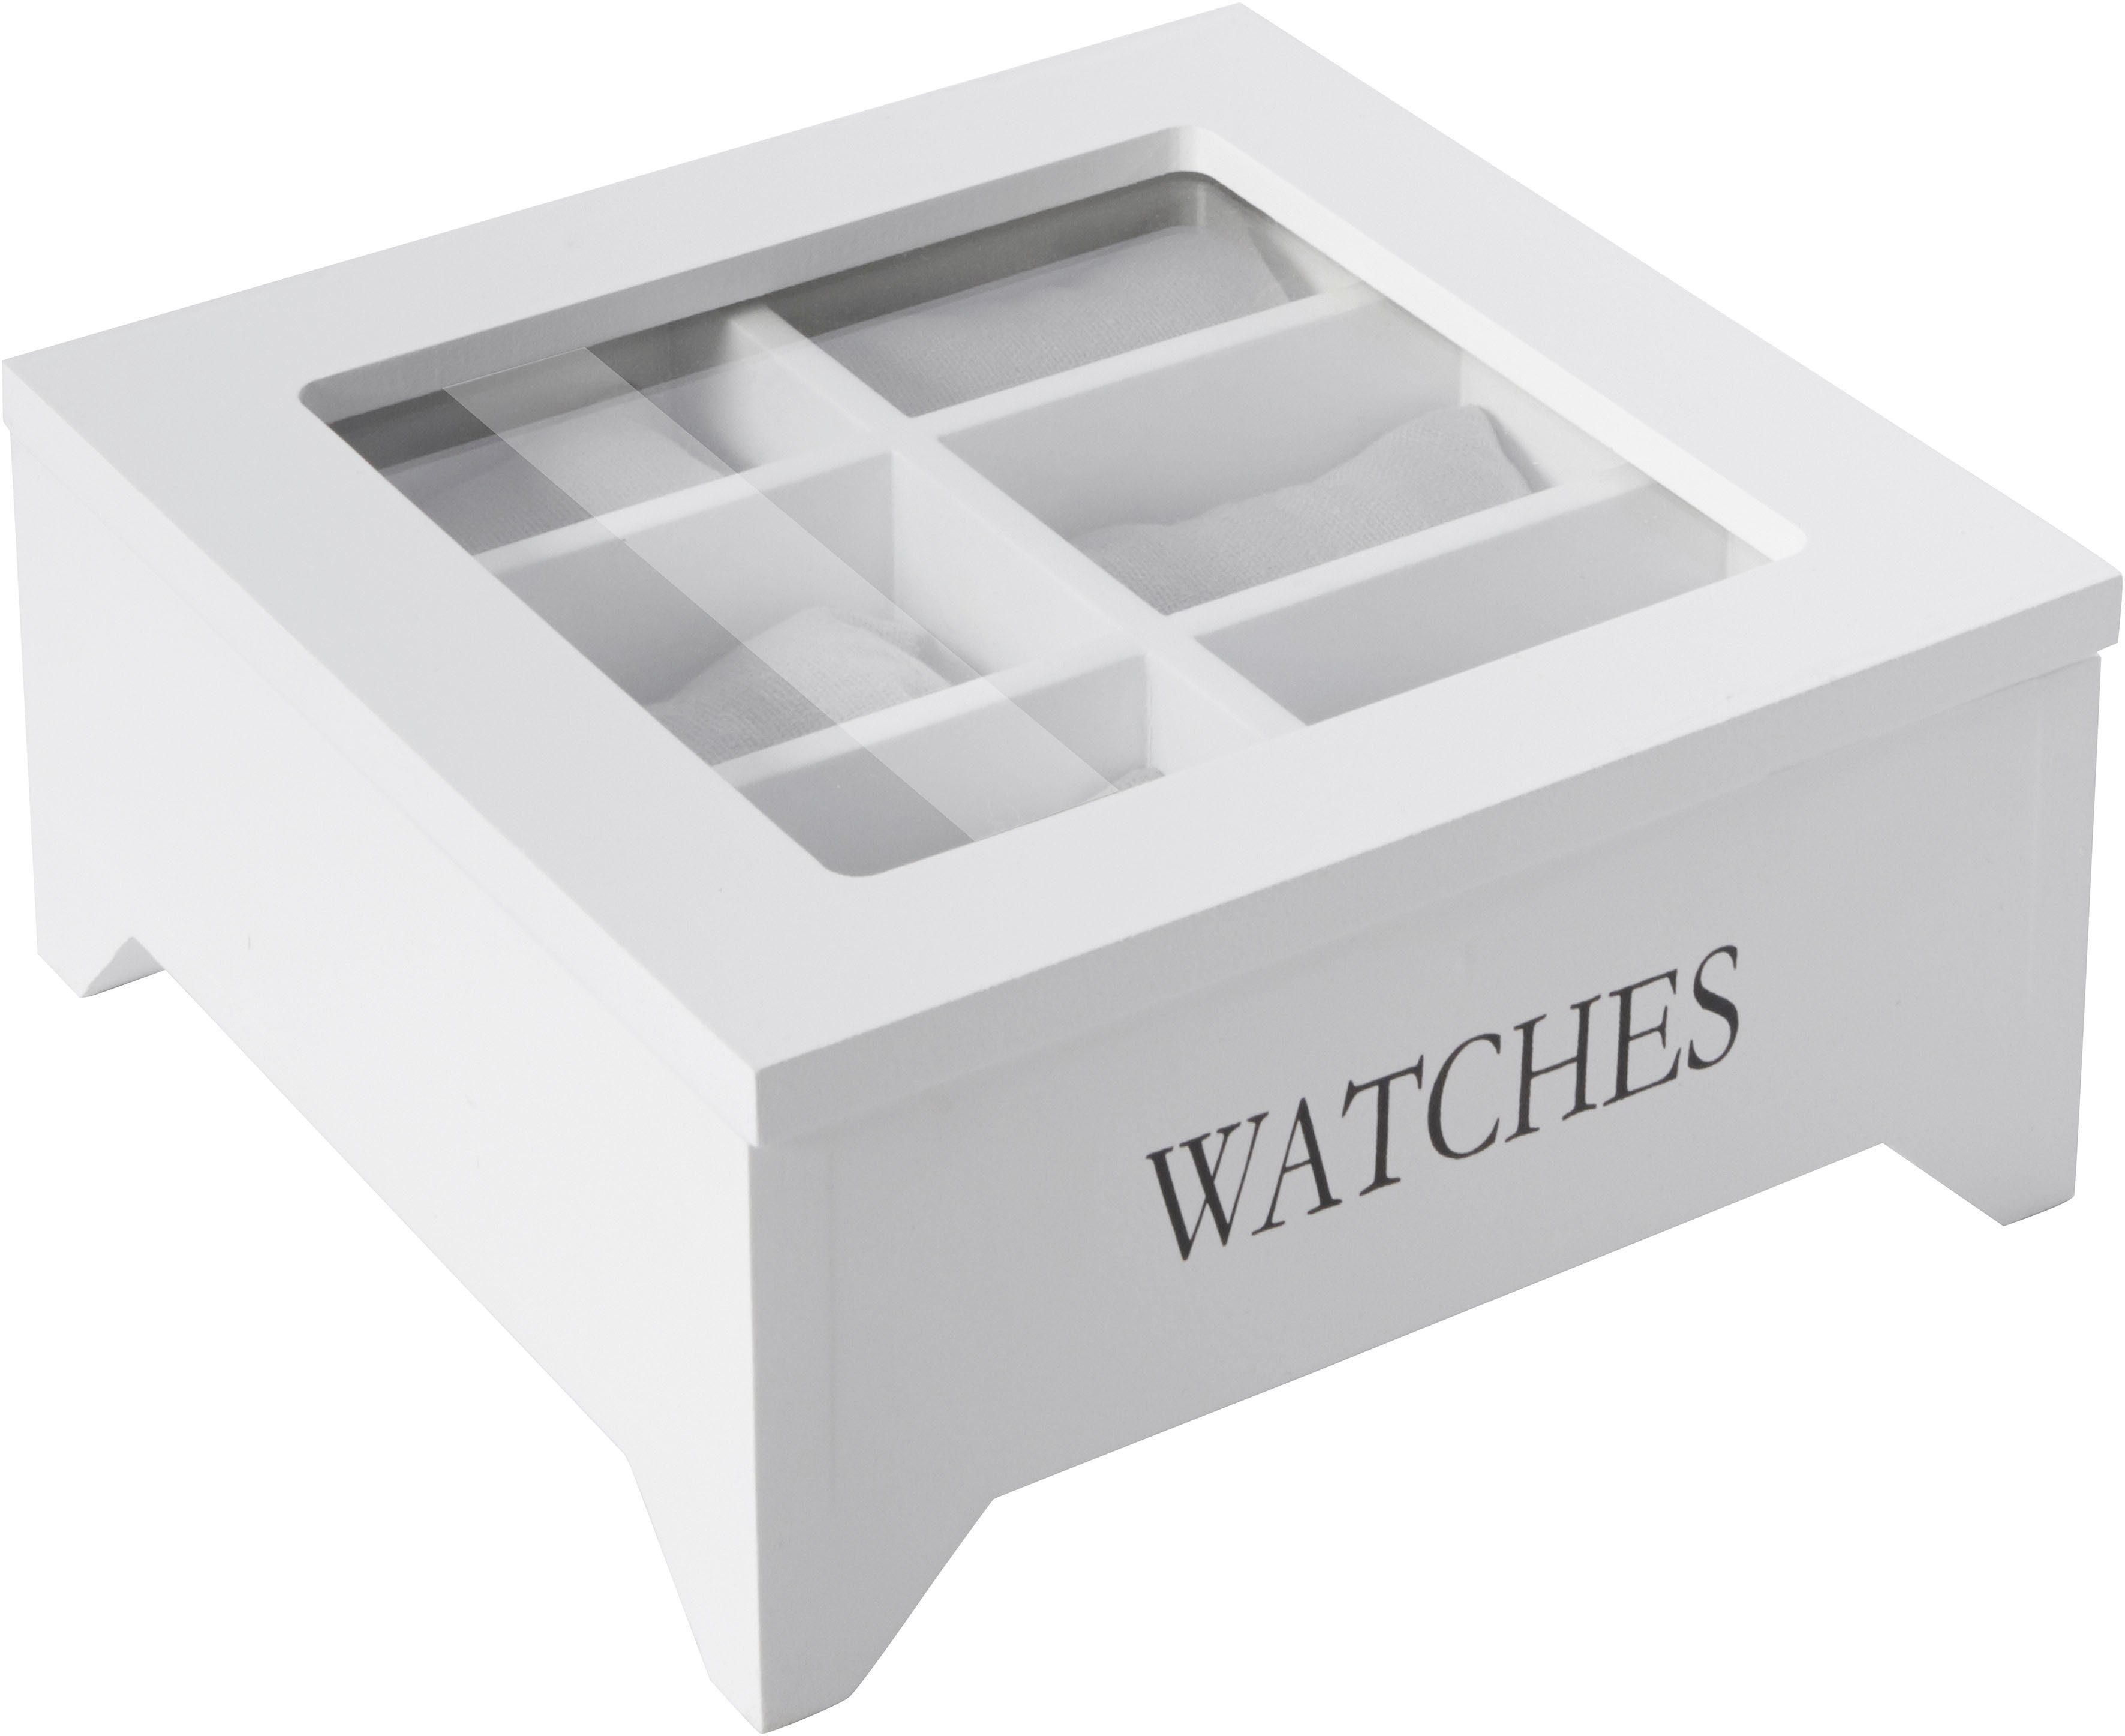 Home affaire Uhrenbox »WATCHES«, Uhrenbox online kaufen | OTTO